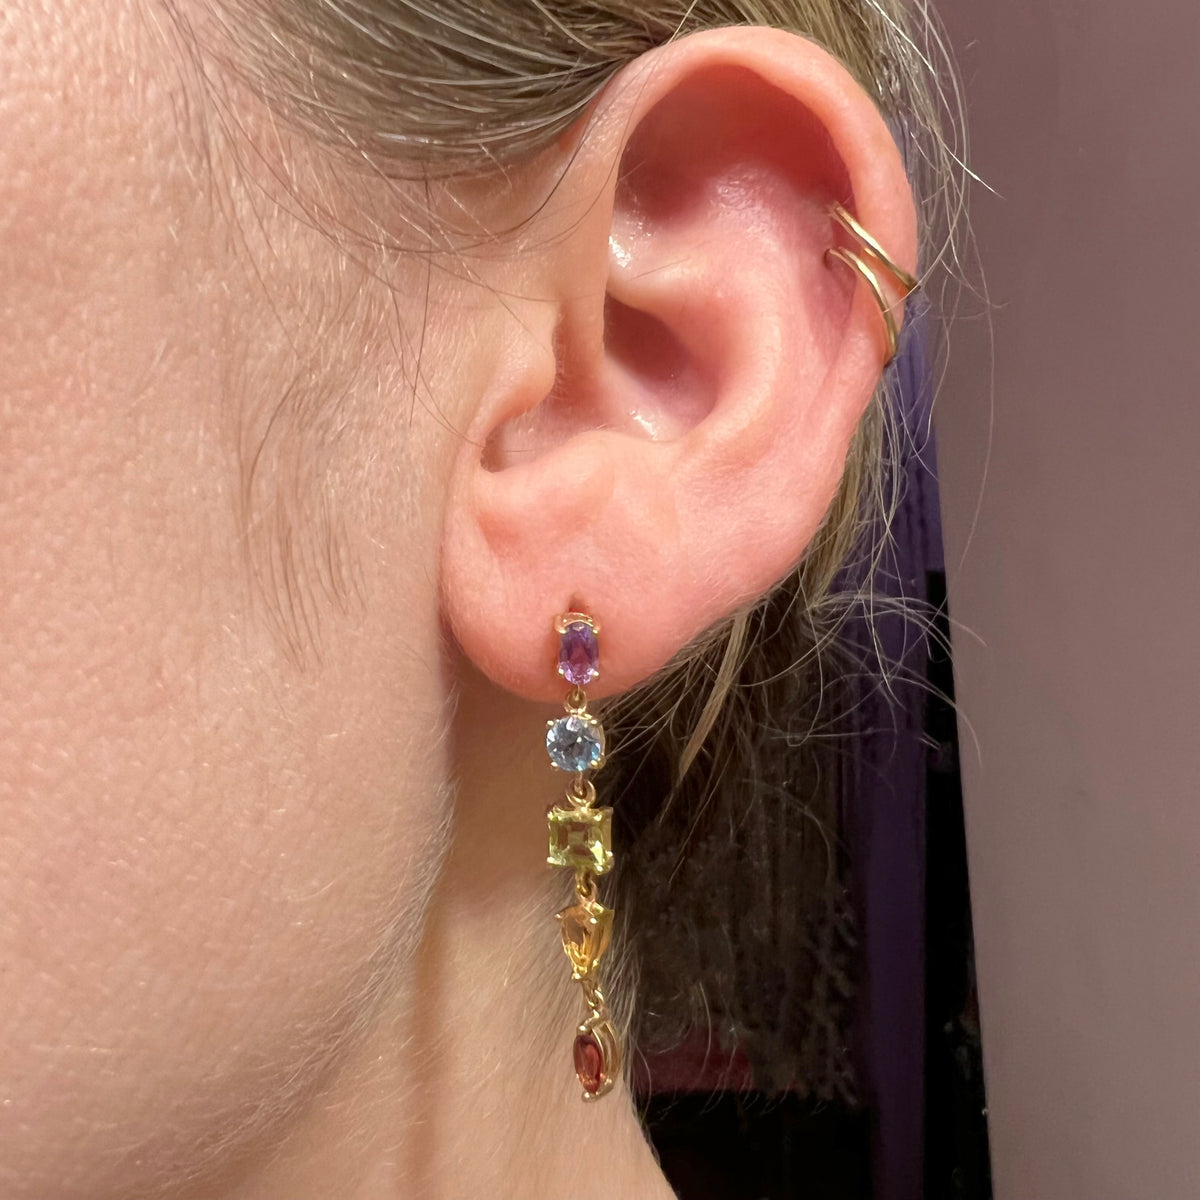 Raisin earring(metallic)